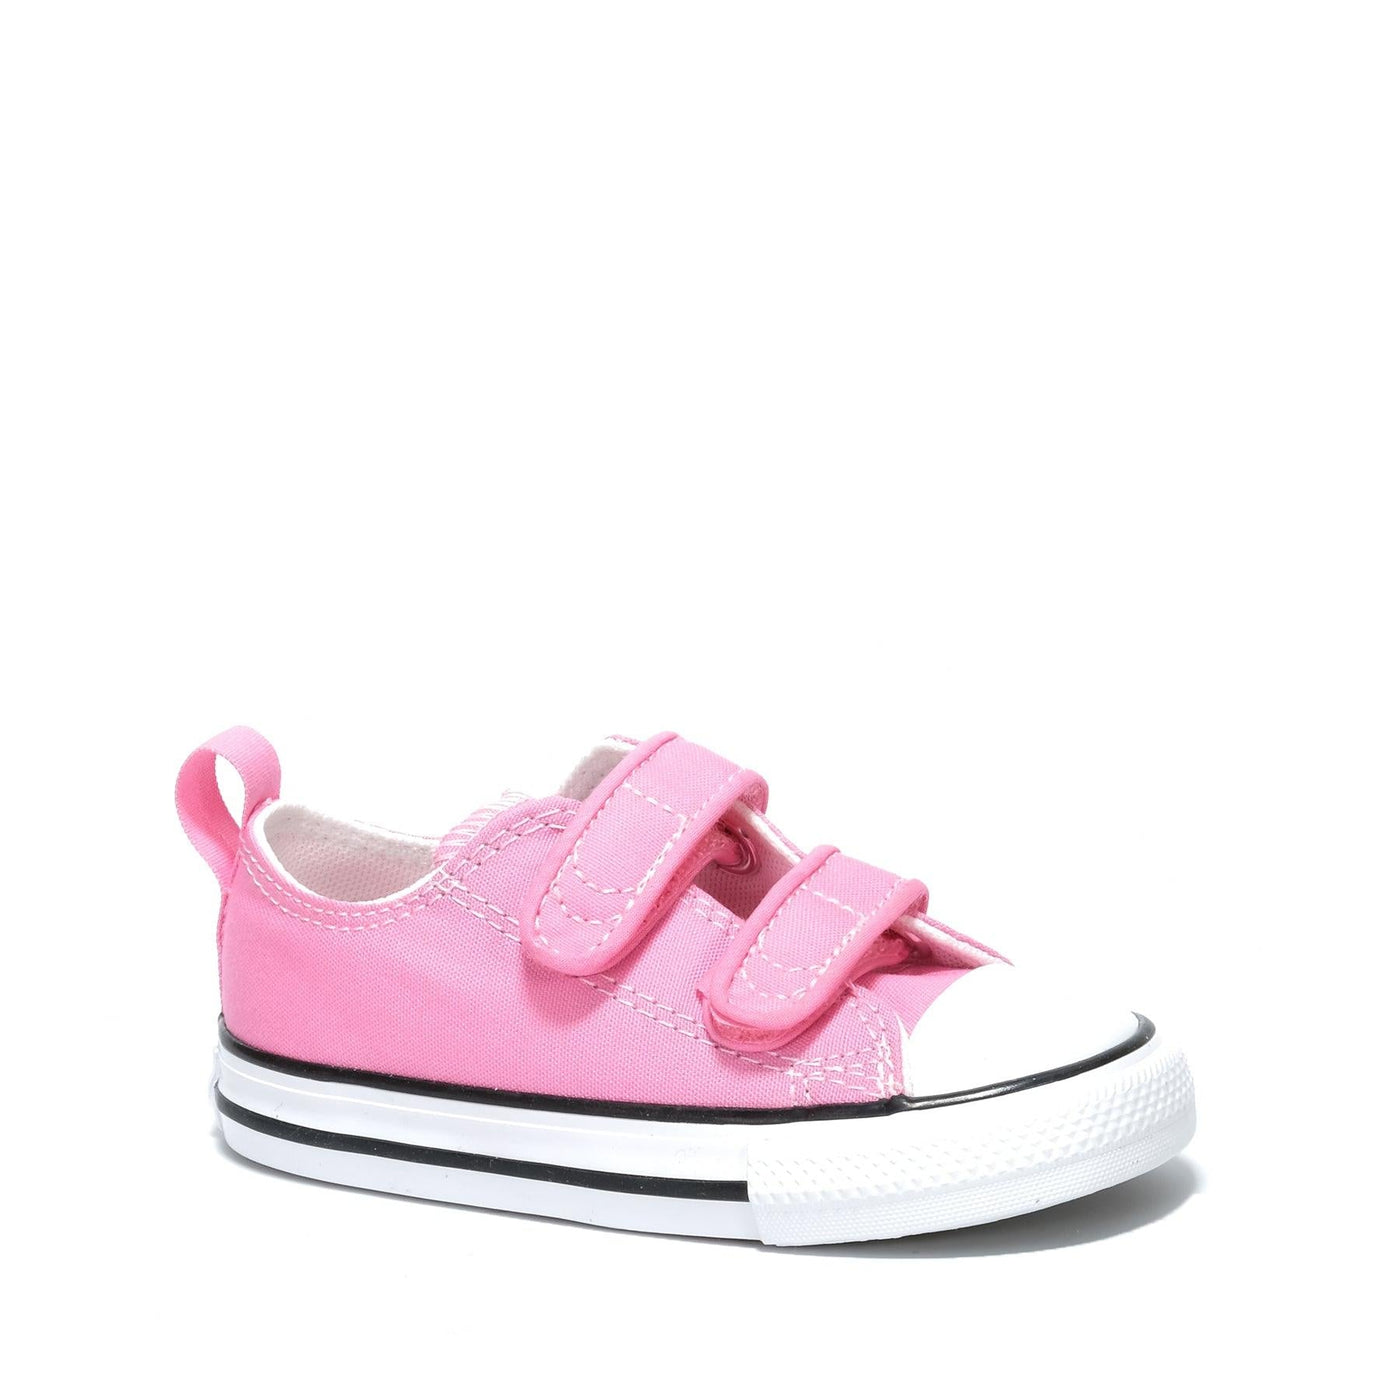 Converse Infant Slip on Shoe Pink Gr8 Gear NZ